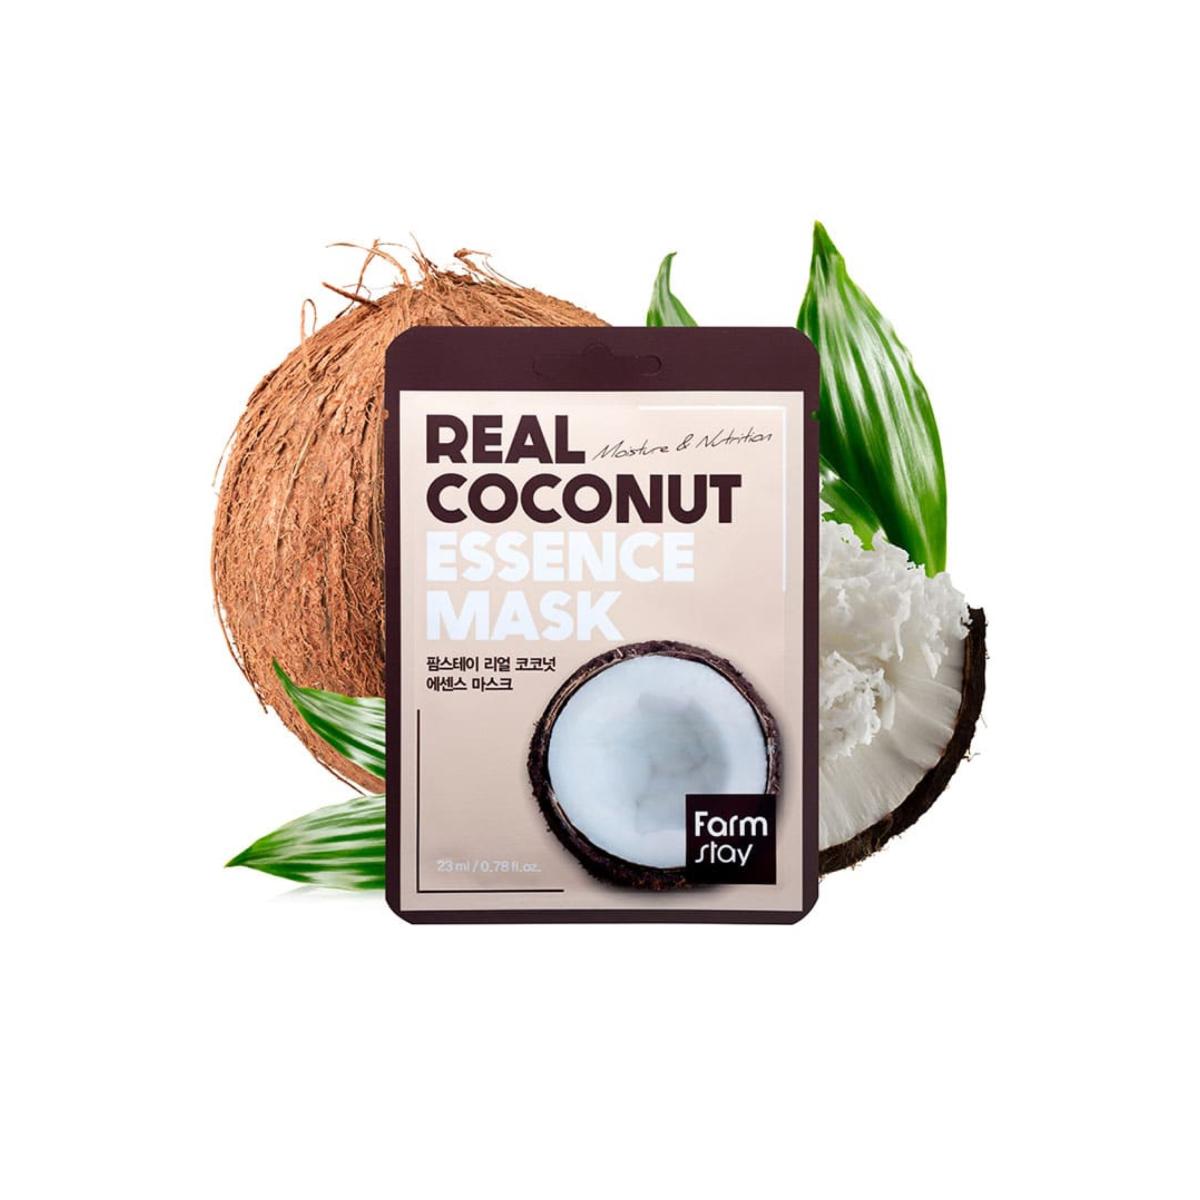 ماسک ورقه ای نارگیل - Coconut sheet mask